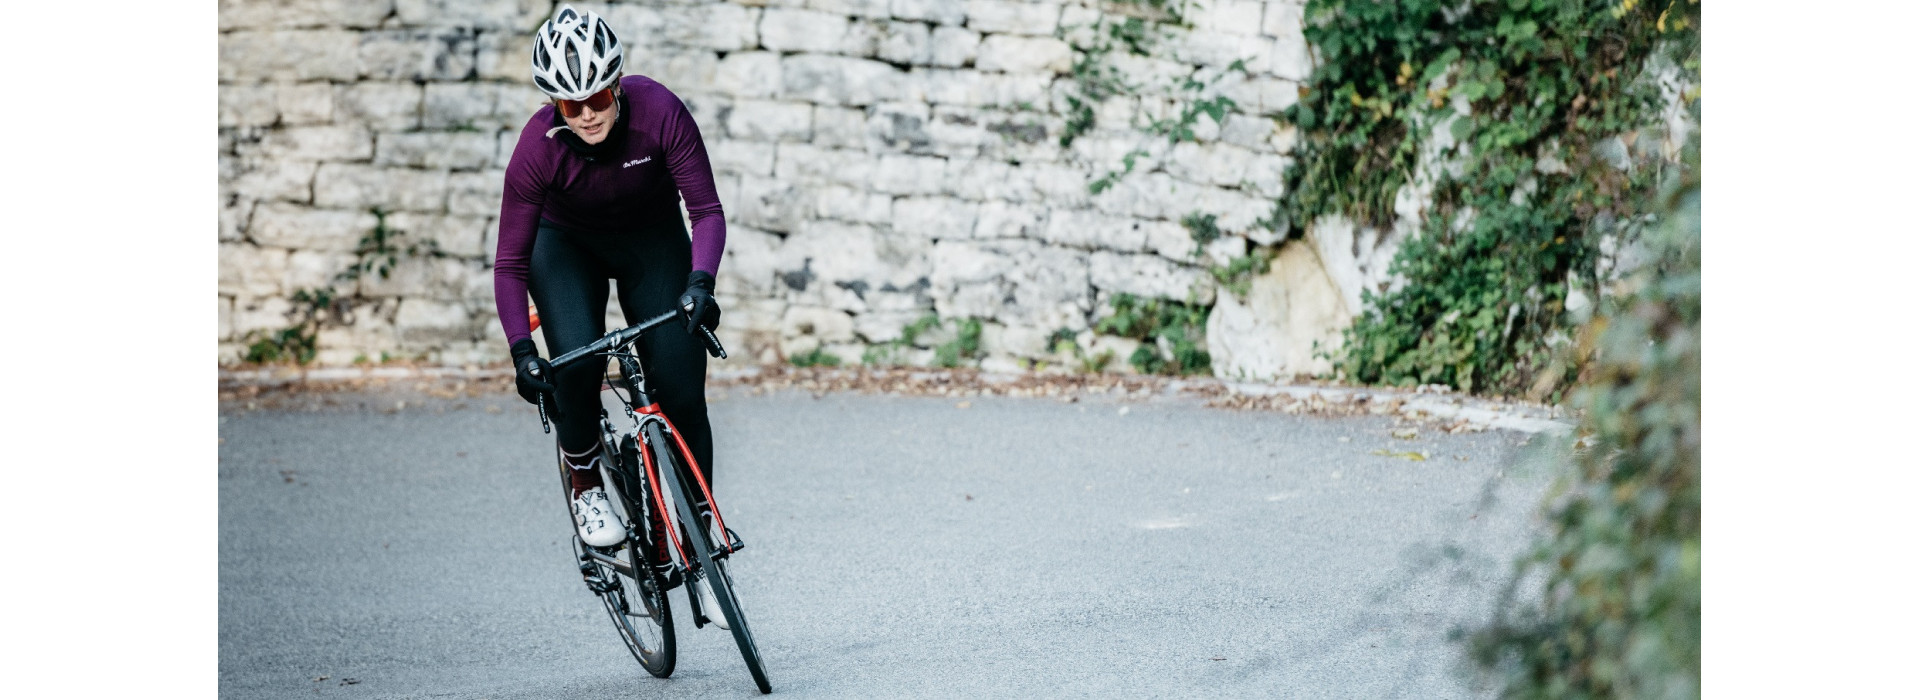 Demarchi - Maglie da ciclismo donna in lana merinos